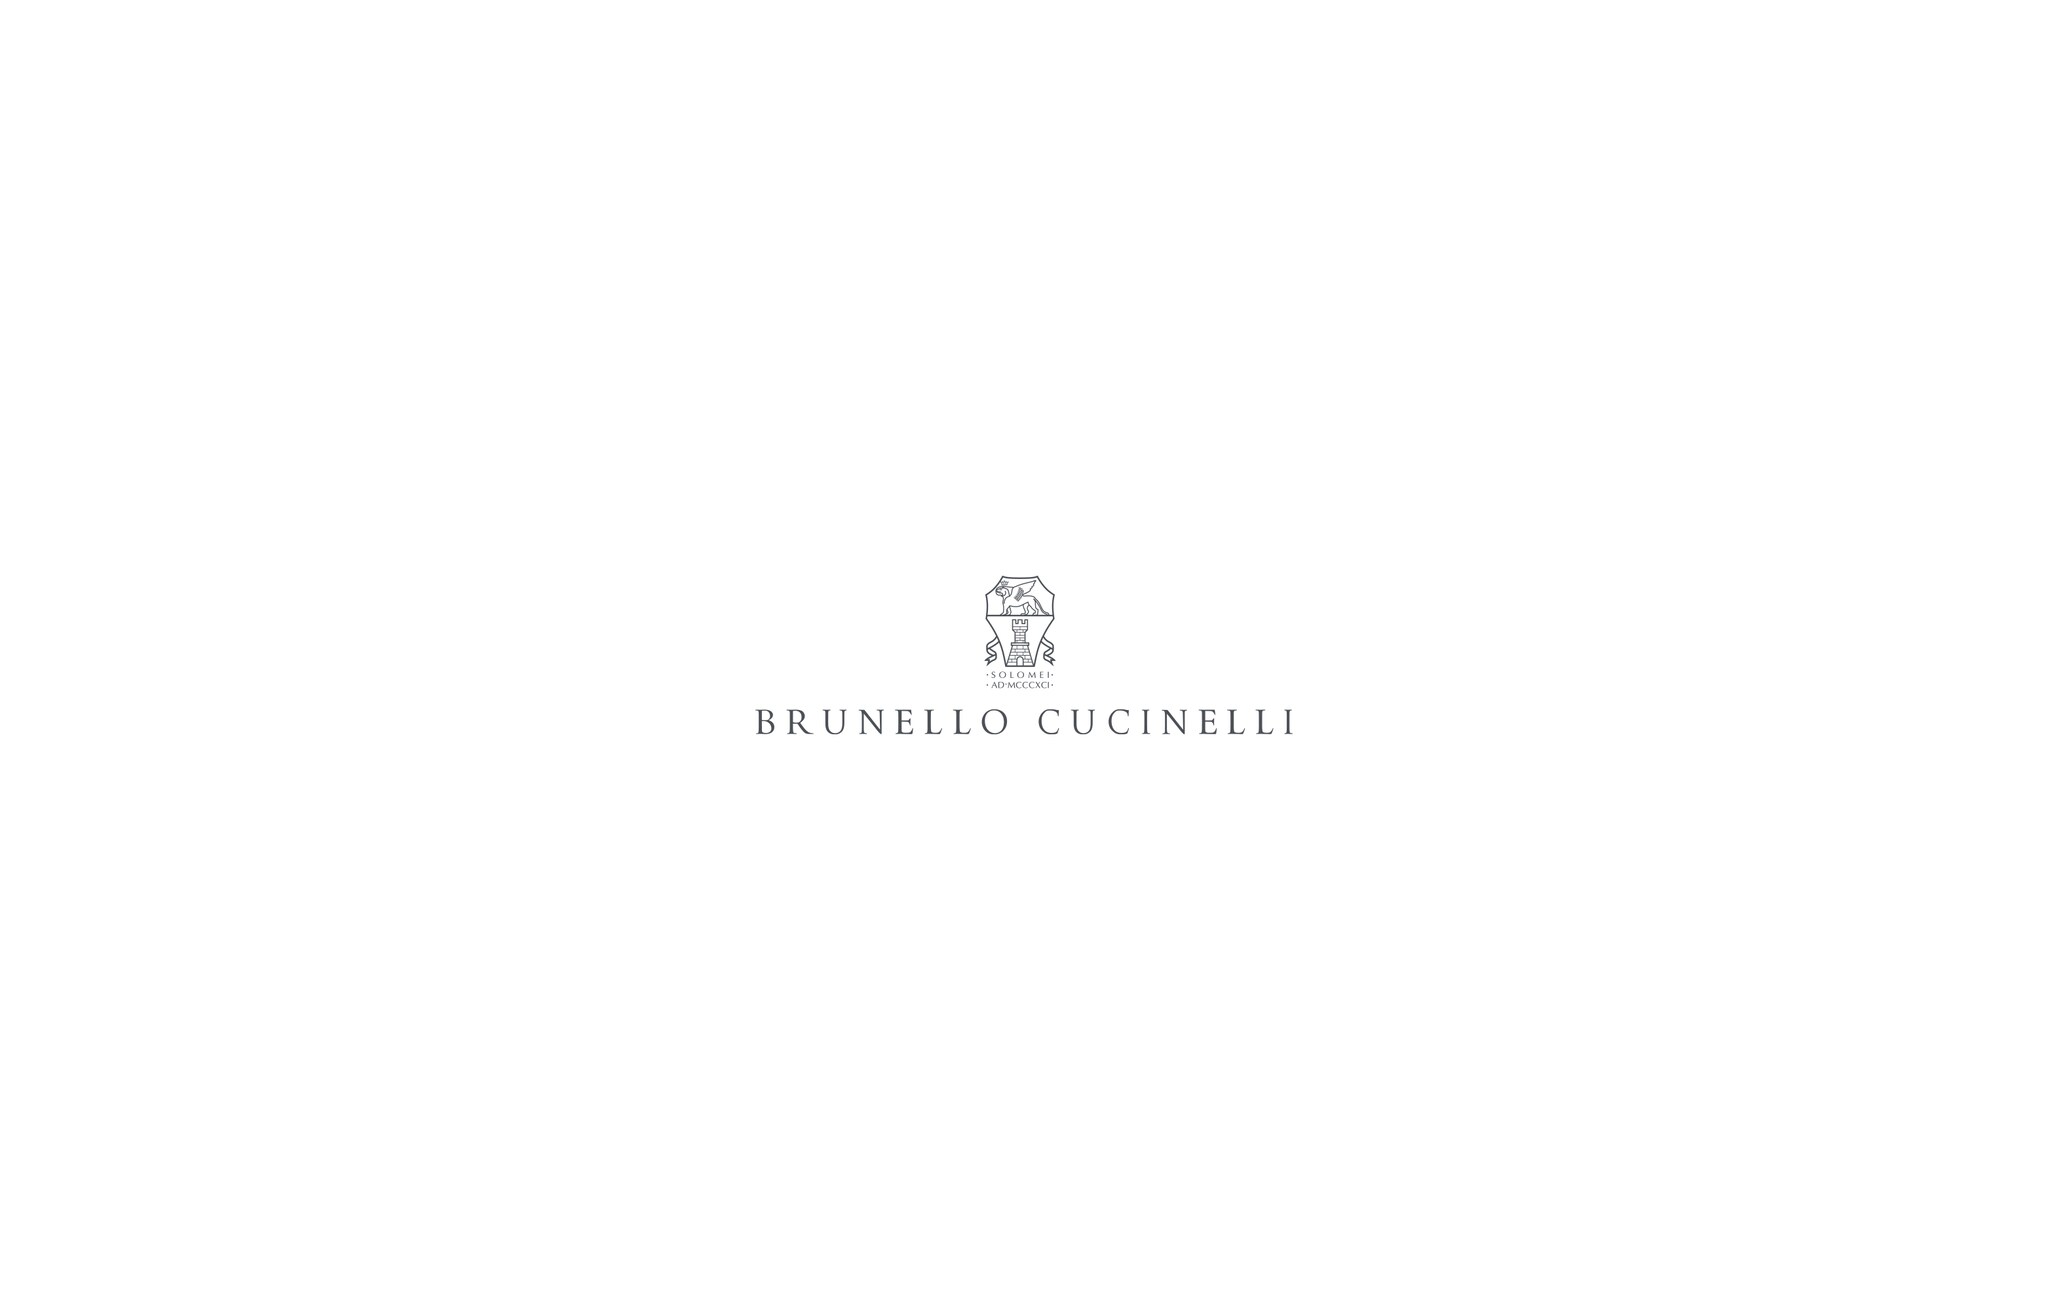  ダズリングネットエンブロイダリー ボンバージャケット ブラウン レディース - Brunello Cucinelli 